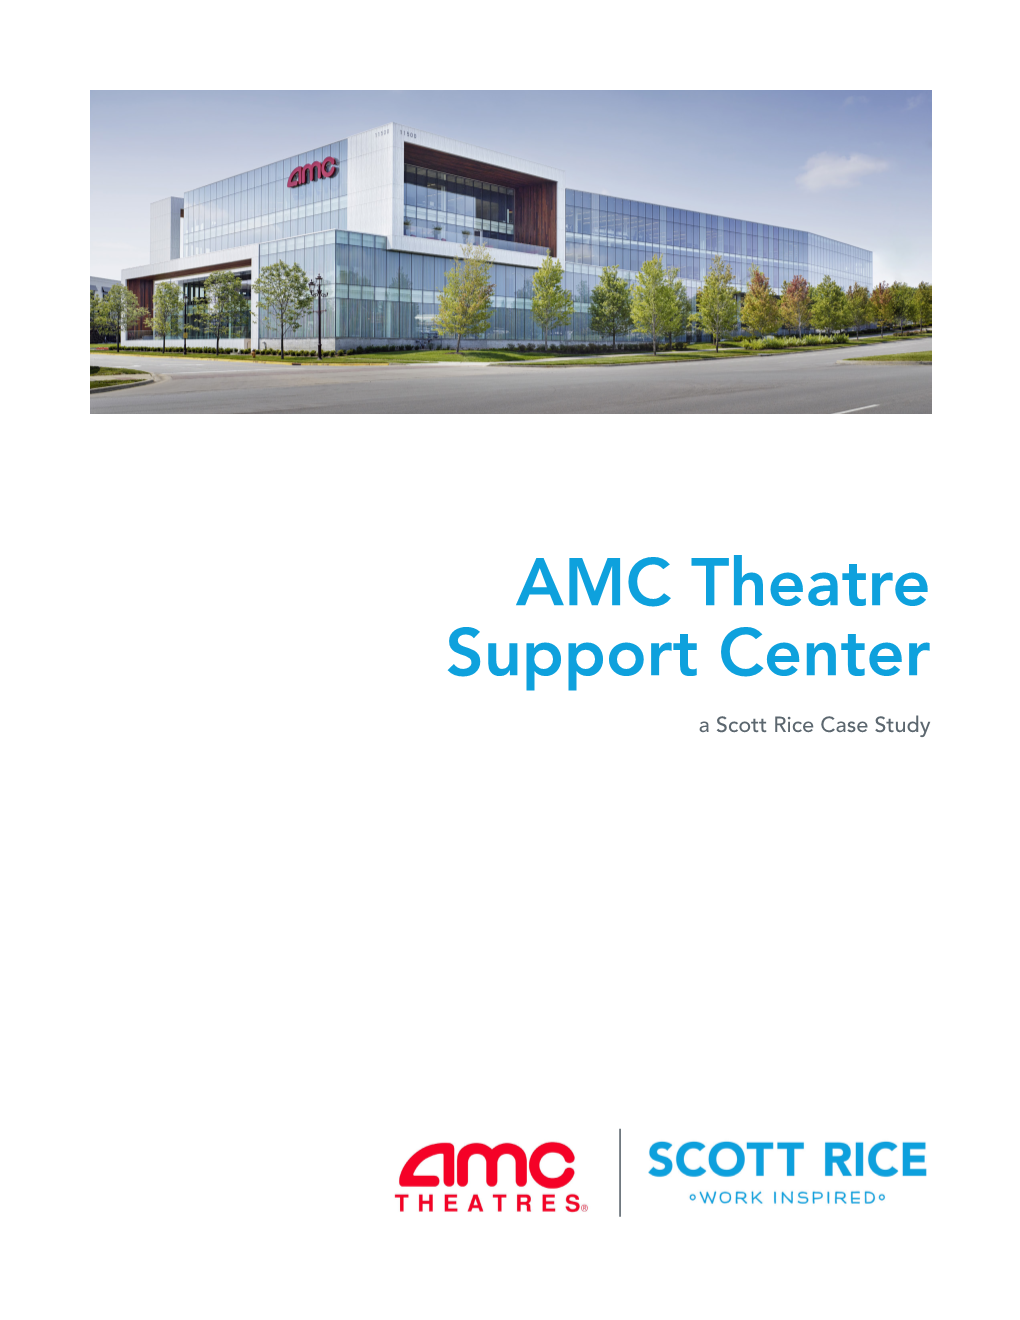 AMC Theatre Support Center